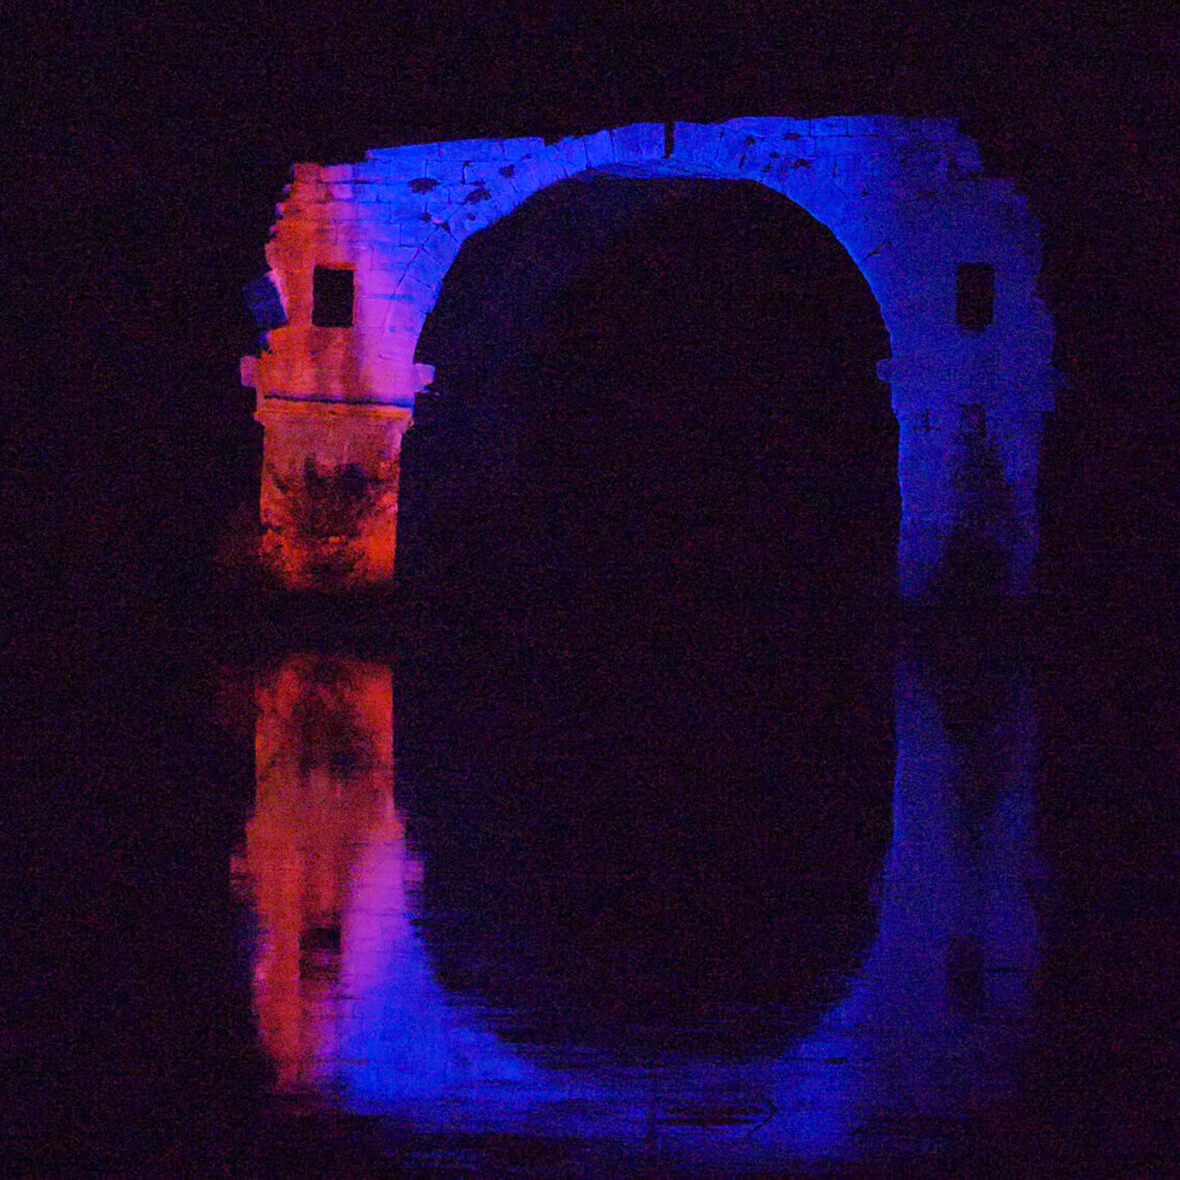 Pont ambroix illuminé de nuit